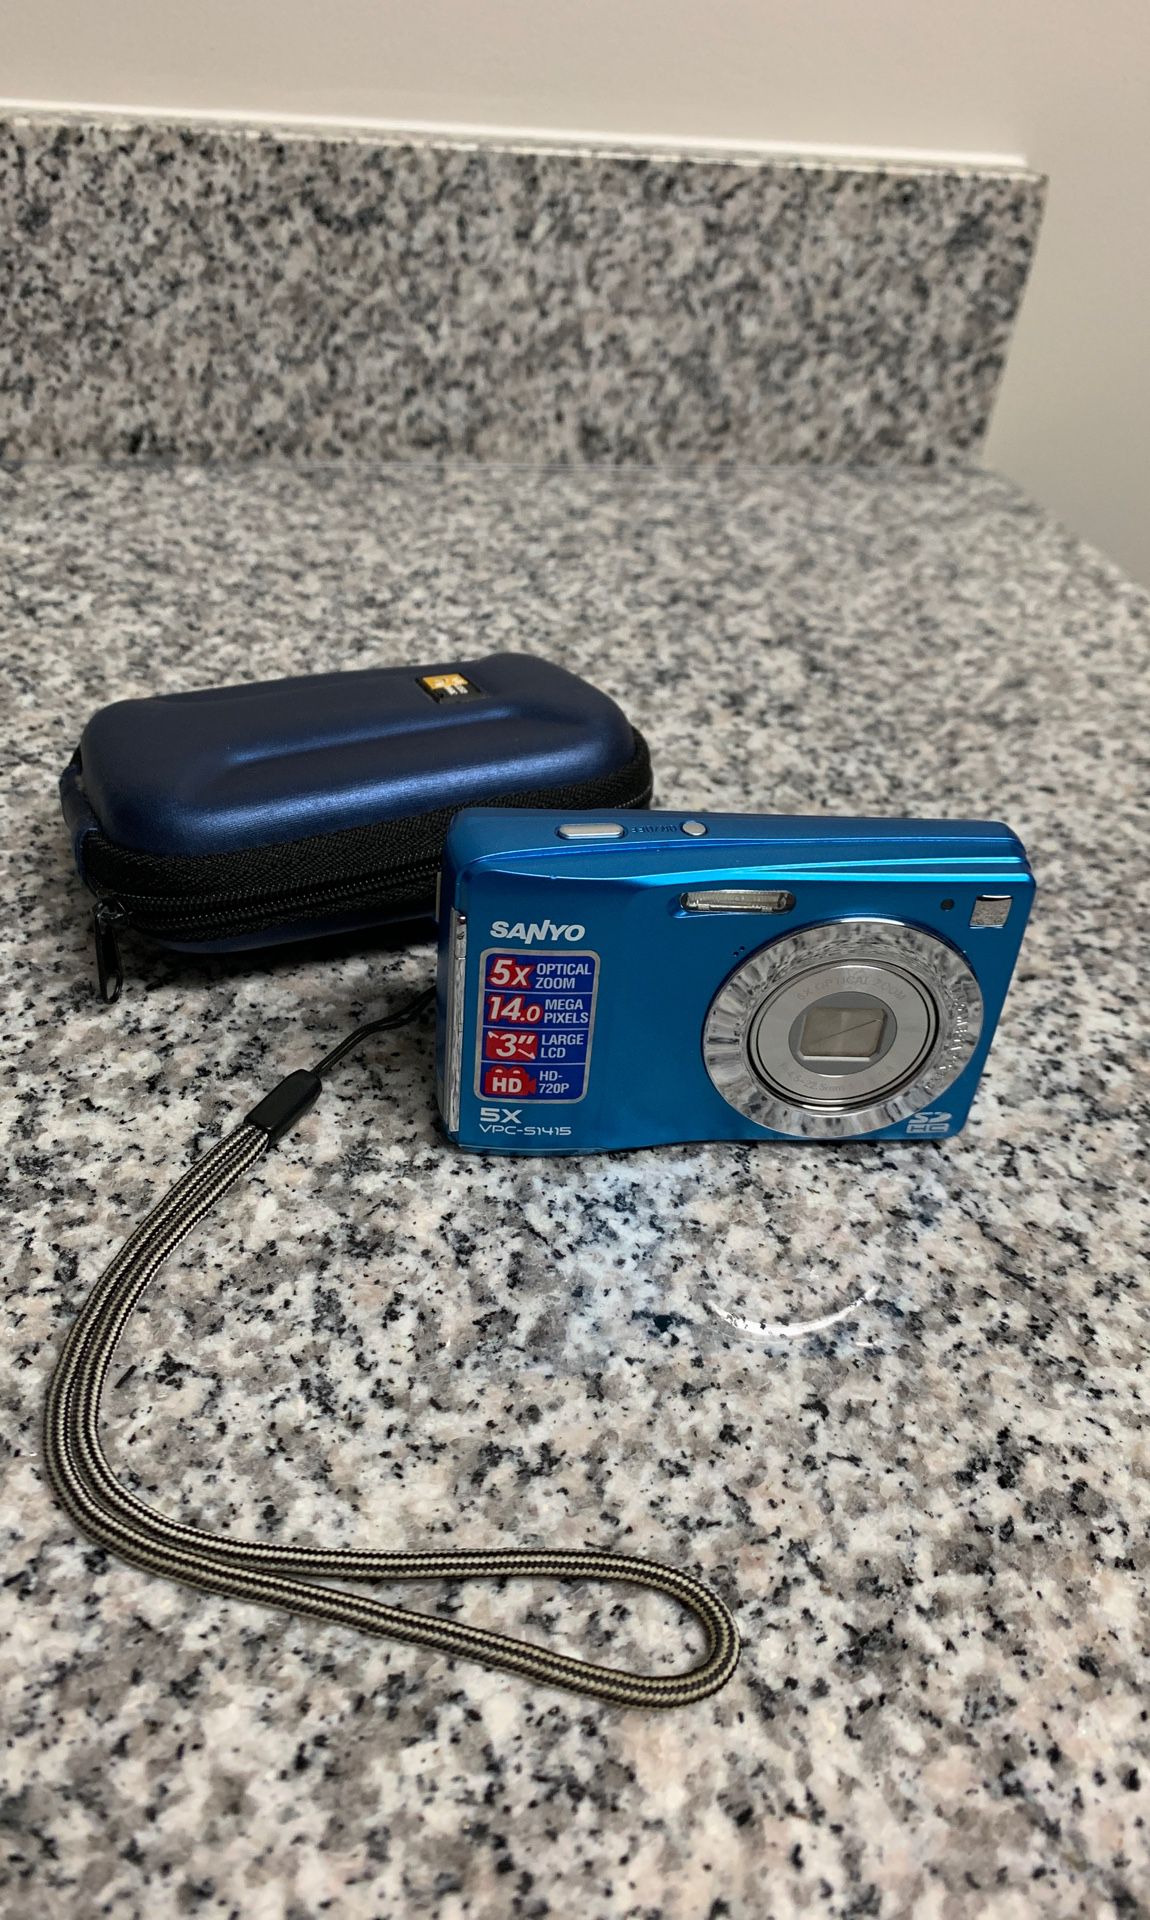 Sanyo digital camera